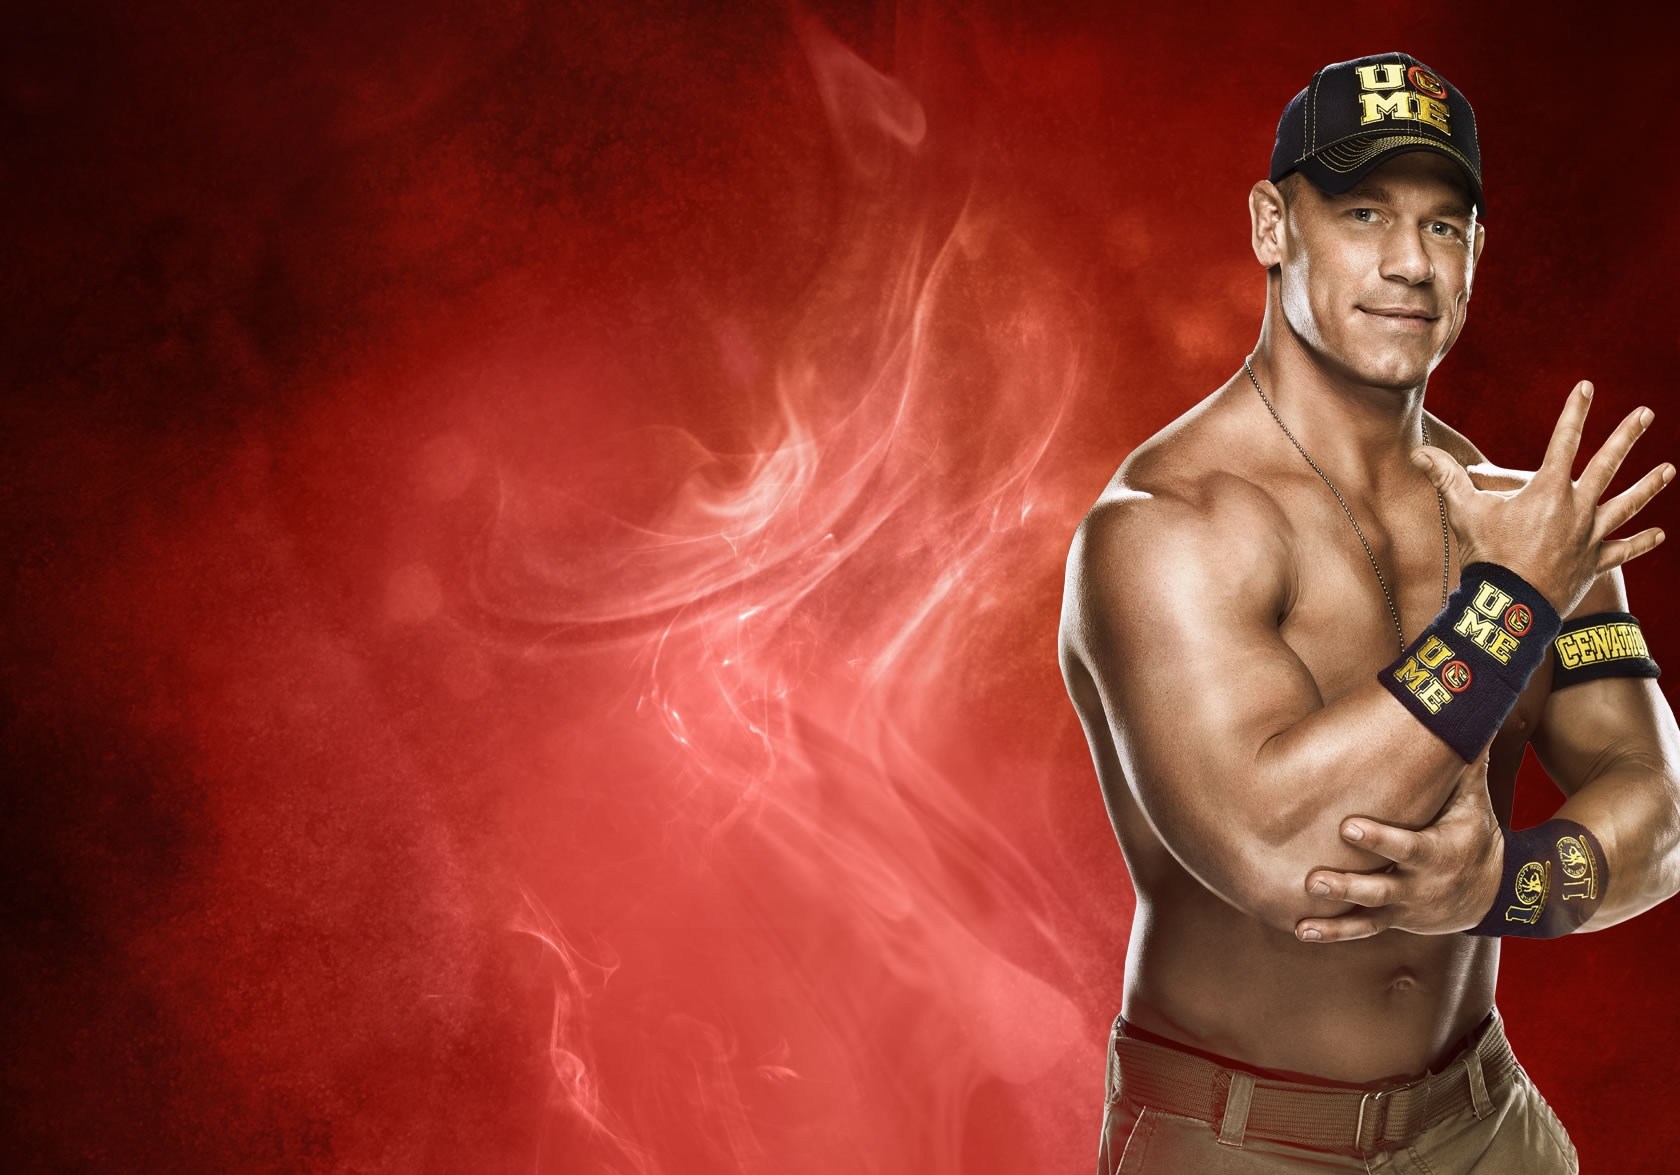 Wwe Roman Reigns In New Look Hd Wallpaper - Wwe 2k14 John Cena , HD Wallpaper & Backgrounds